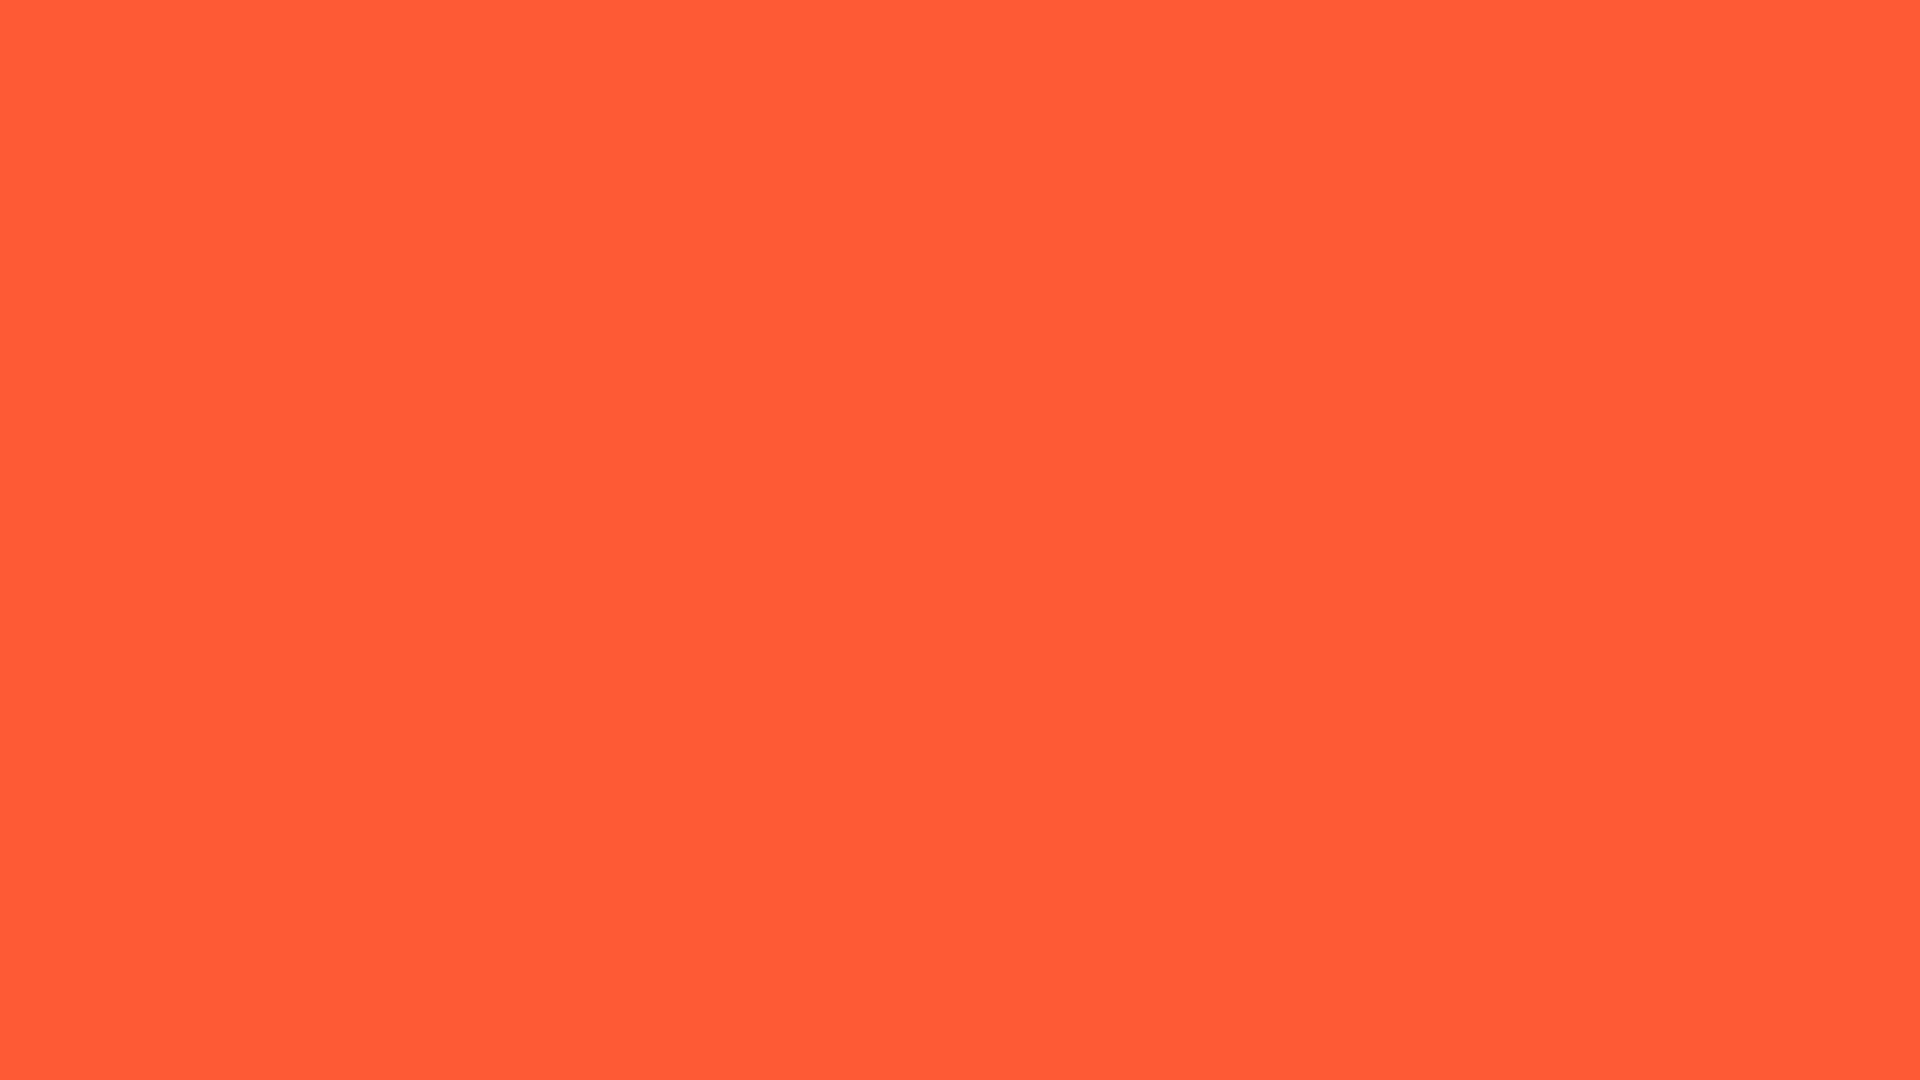 1920x1080 Portland Orange Solid Color Background